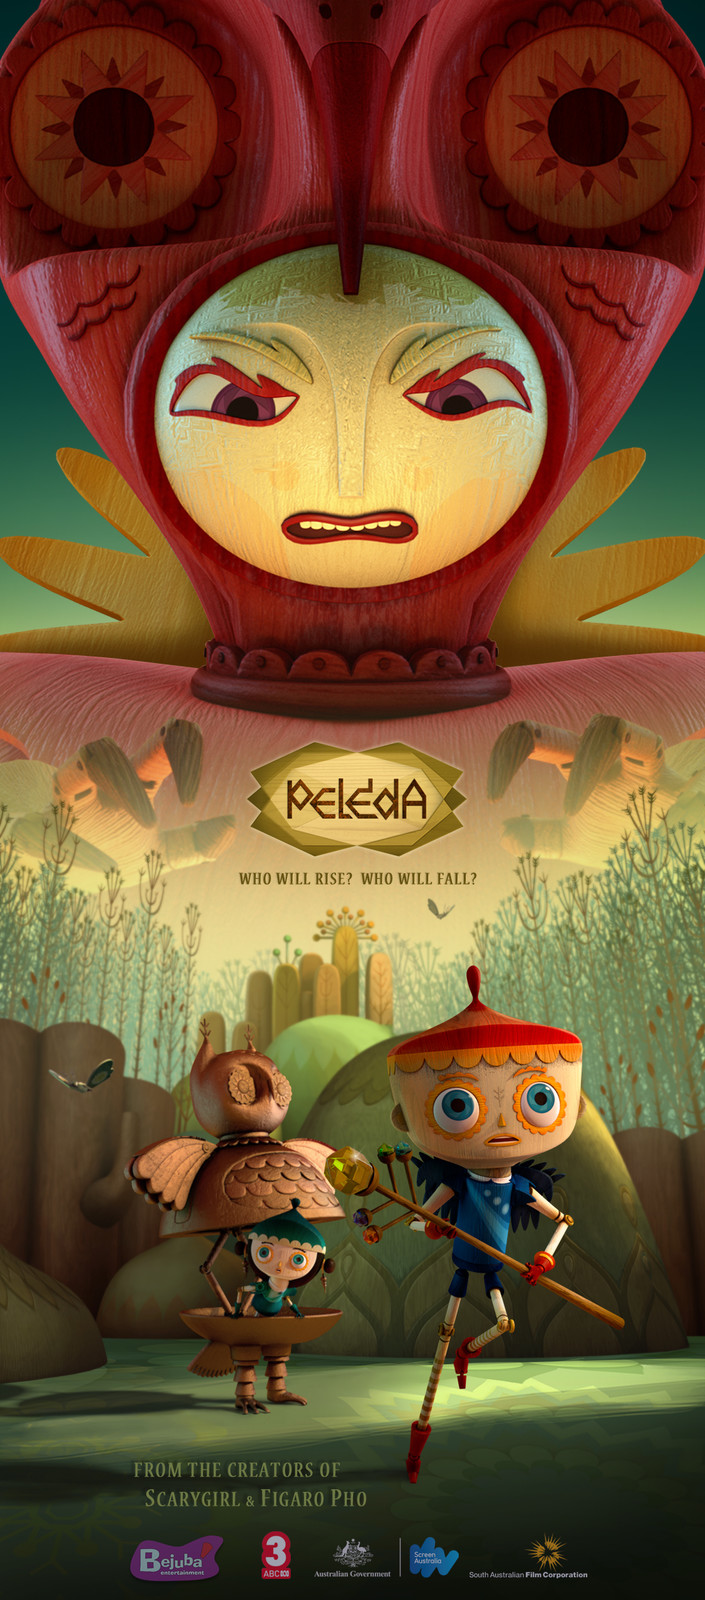 Peleda Animated TV Series